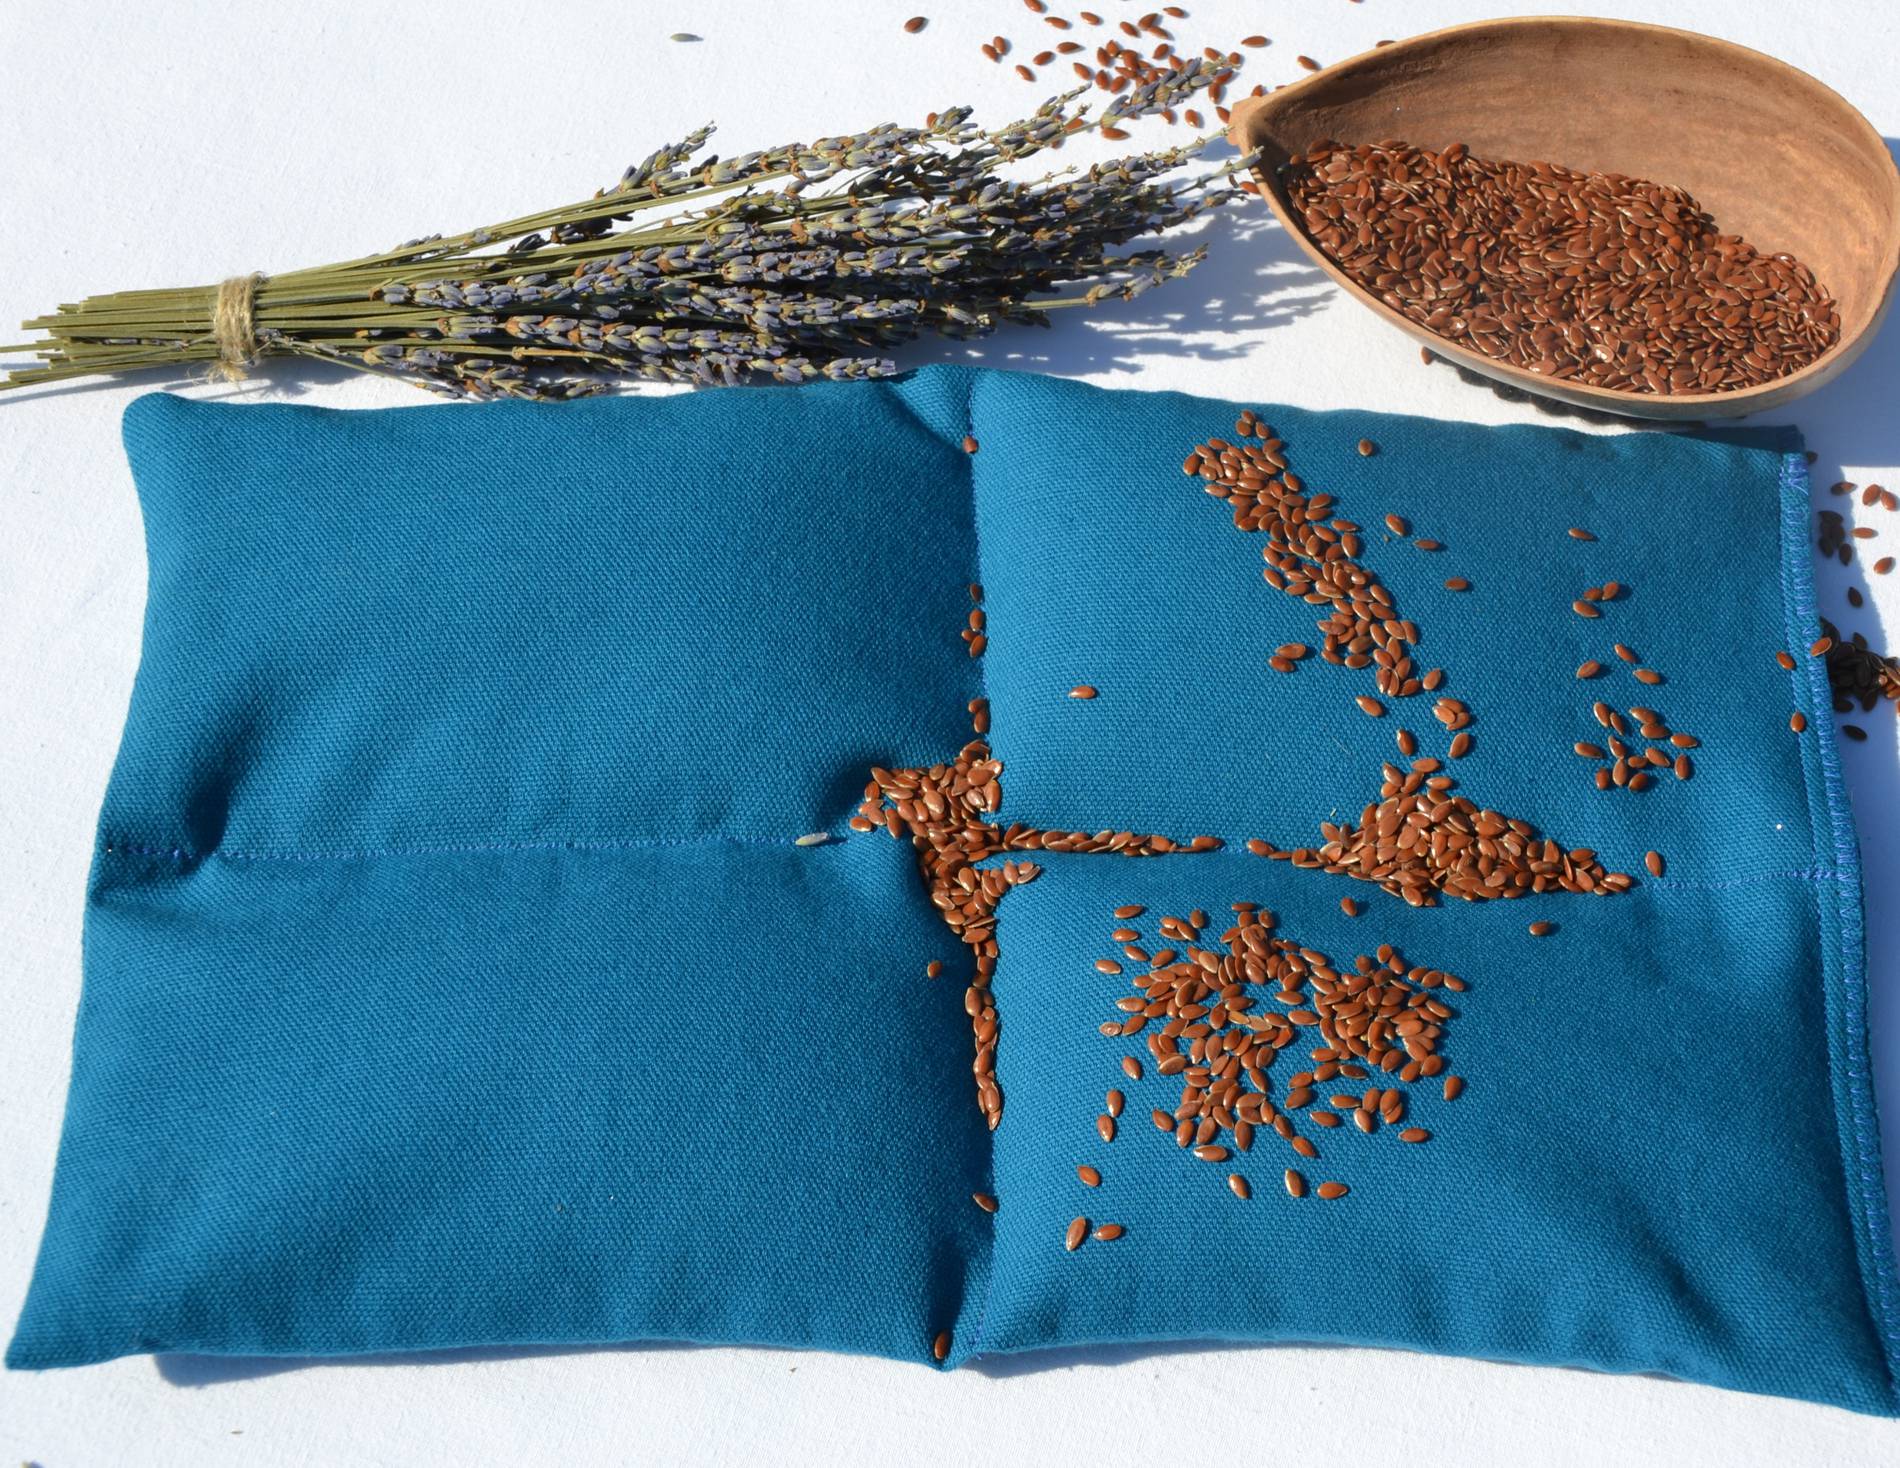 Fil en Poche- Coussin bouillotte sèche en graines de lin bio et lavande bio -bleu